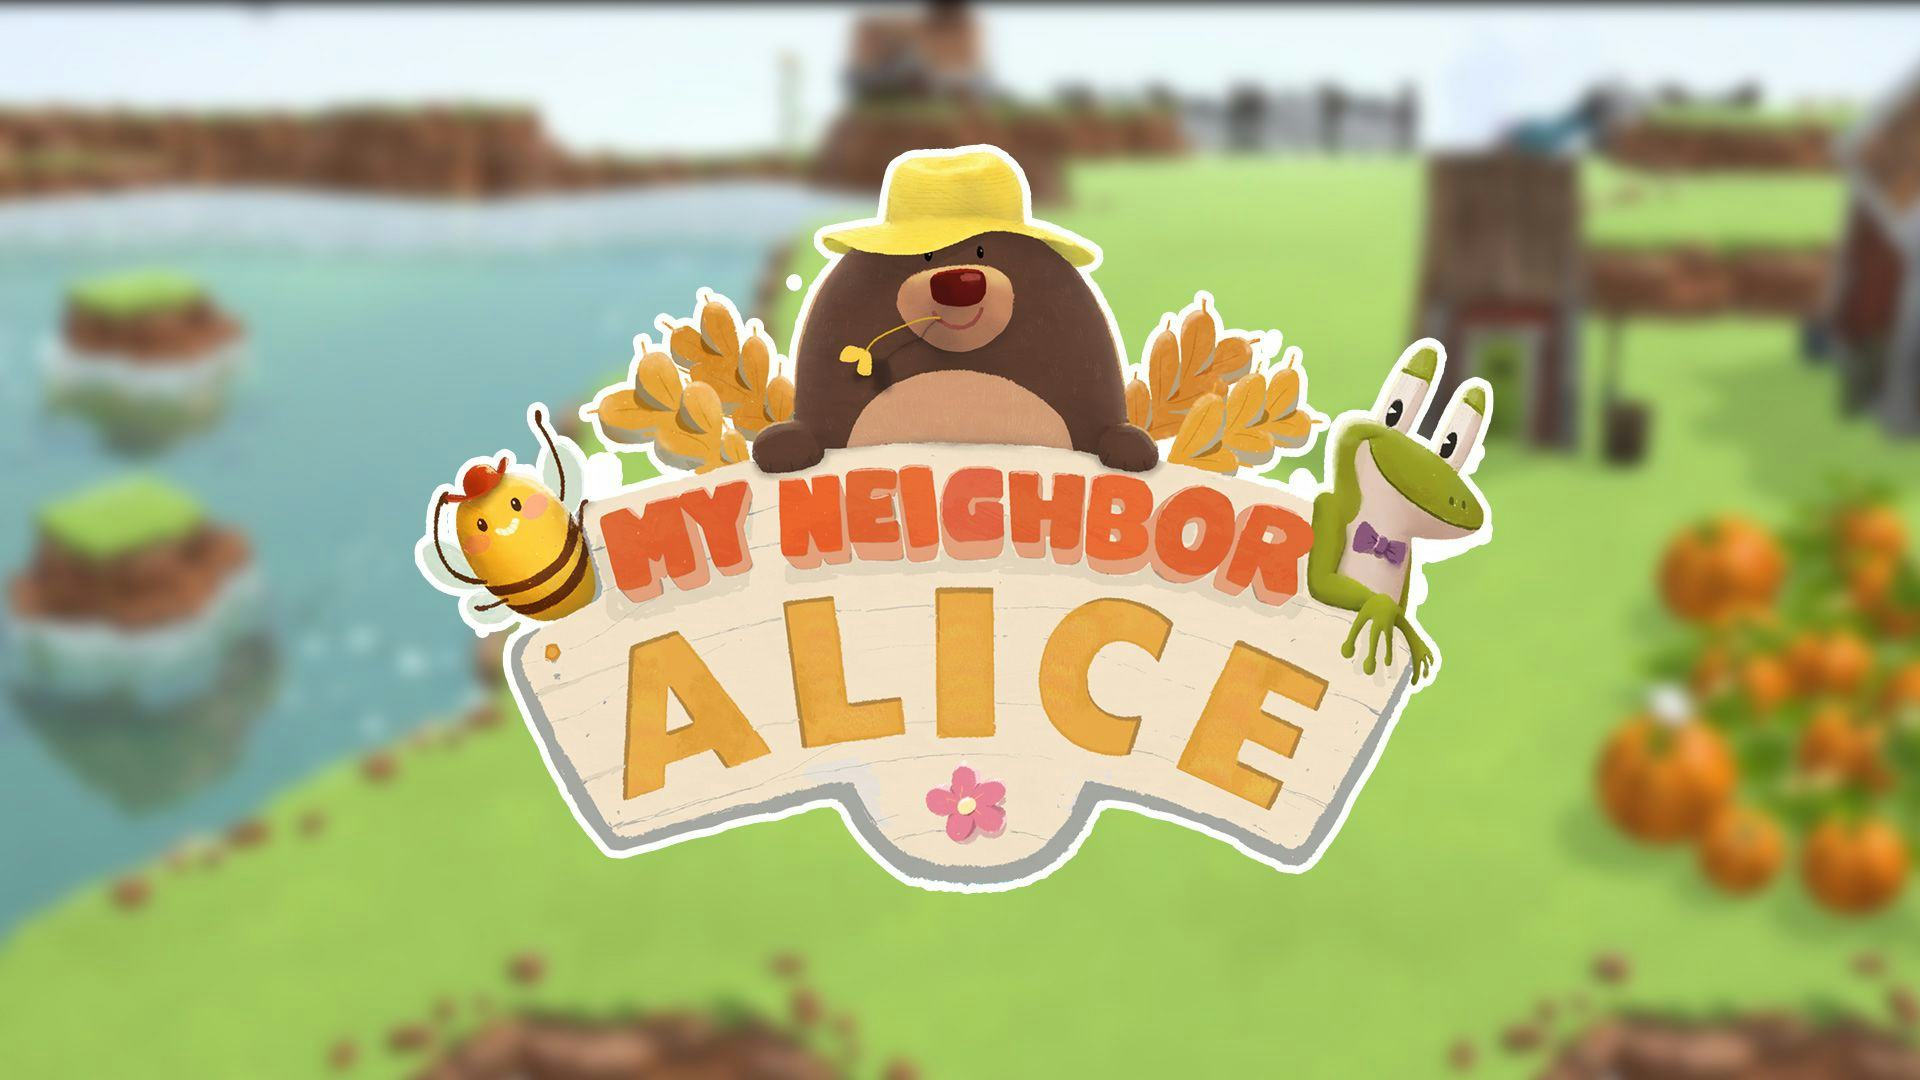 My Neighbor Alice.jpg